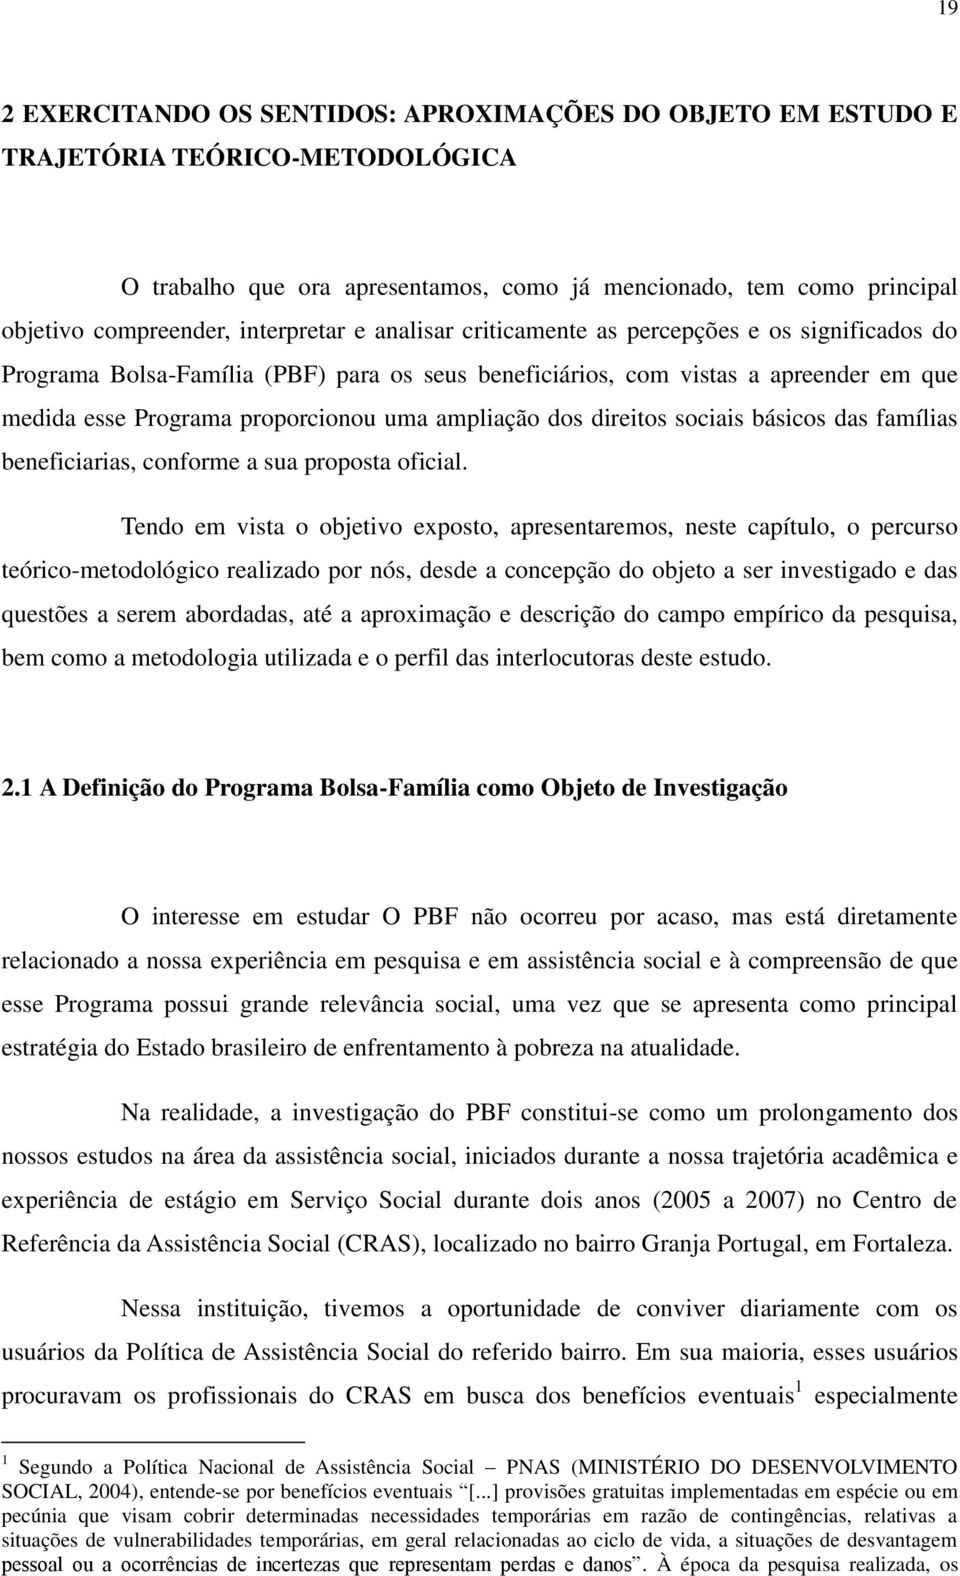 ampliação dos direitos sociais básicos das famílias beneficiarias, conforme a sua proposta oficial.